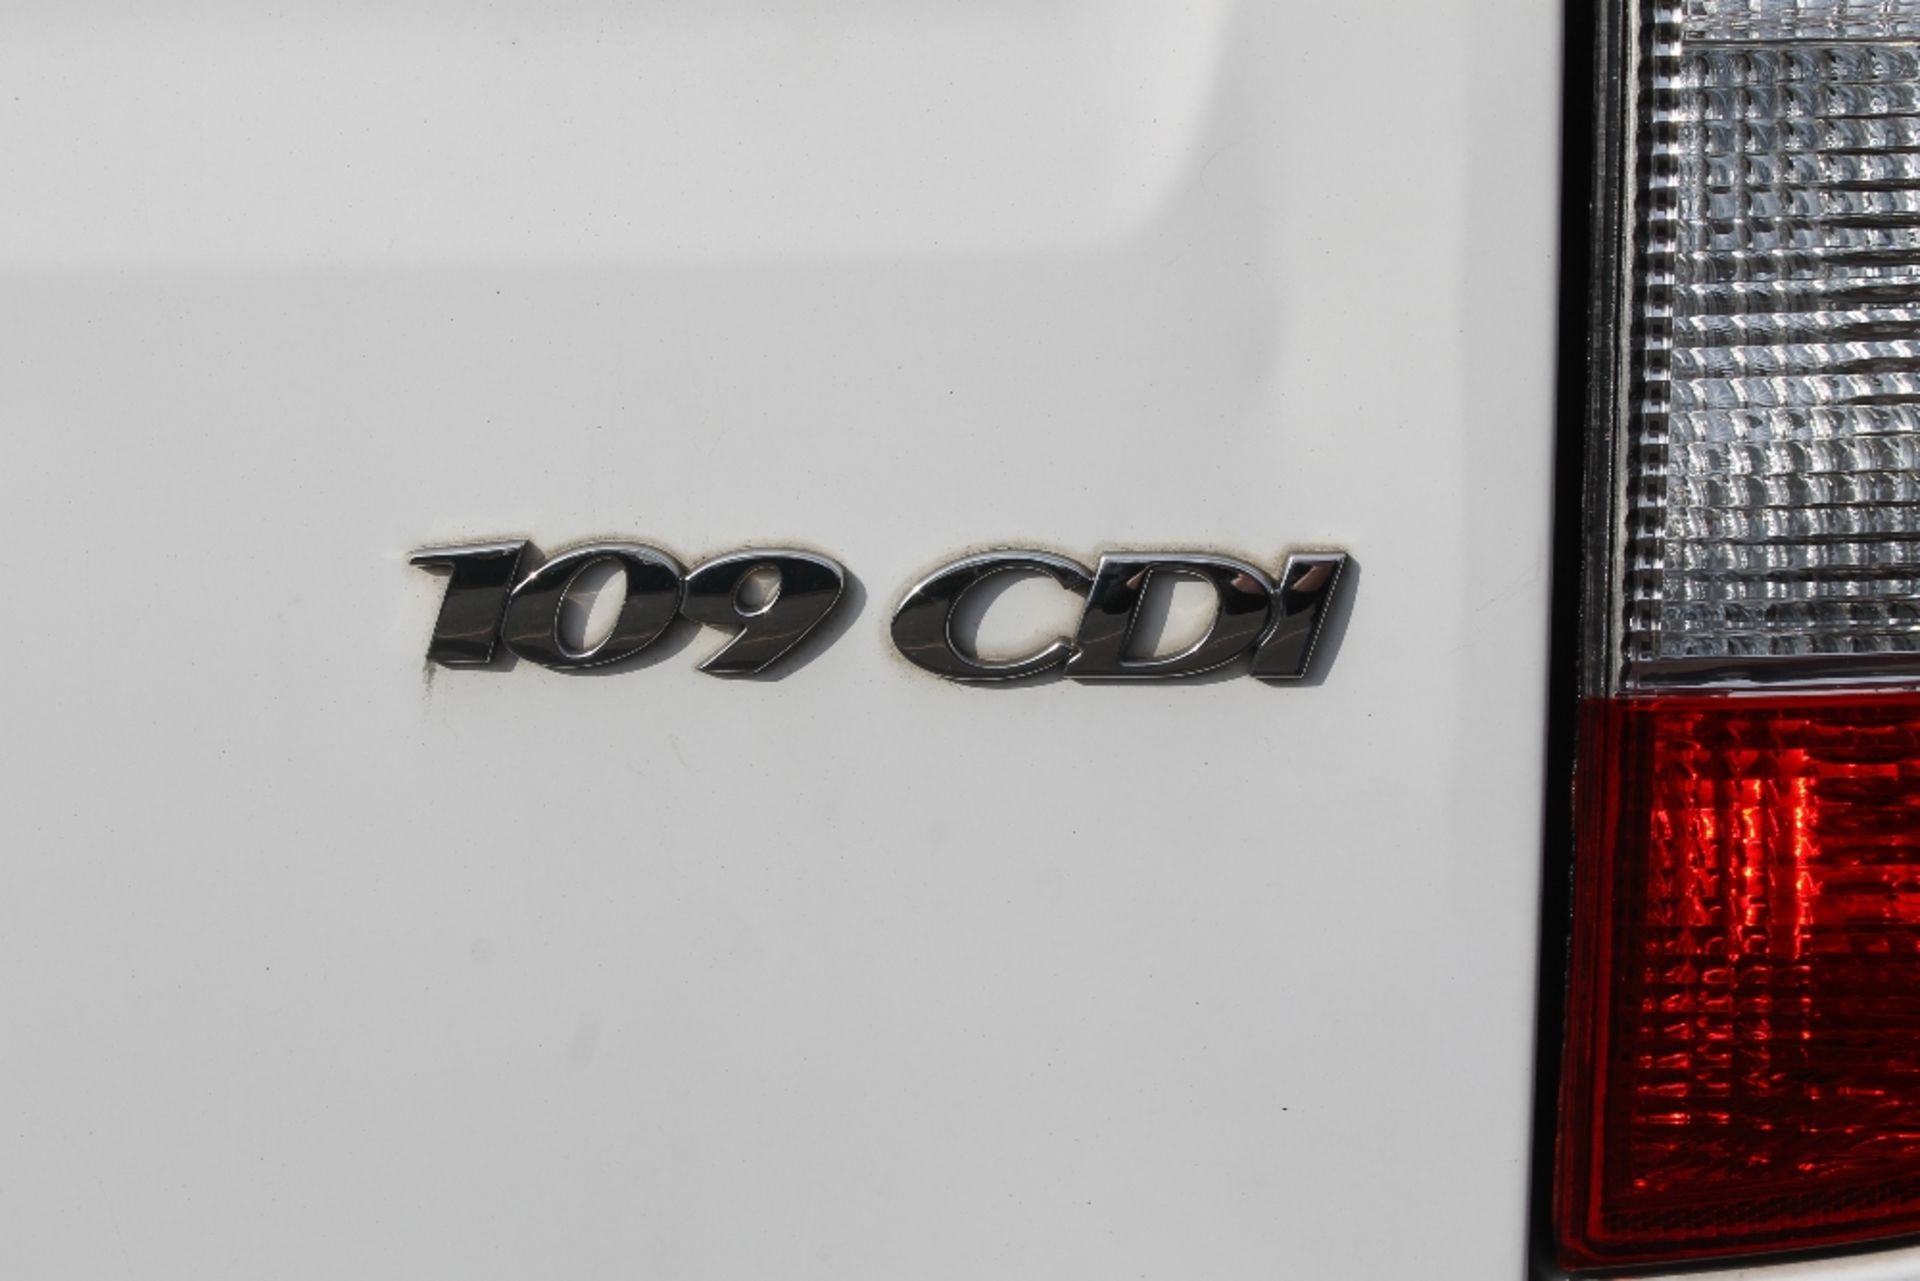 Mercedes Vito Van 2.5L 2007 Diesel 109 CDi - Image 9 of 17